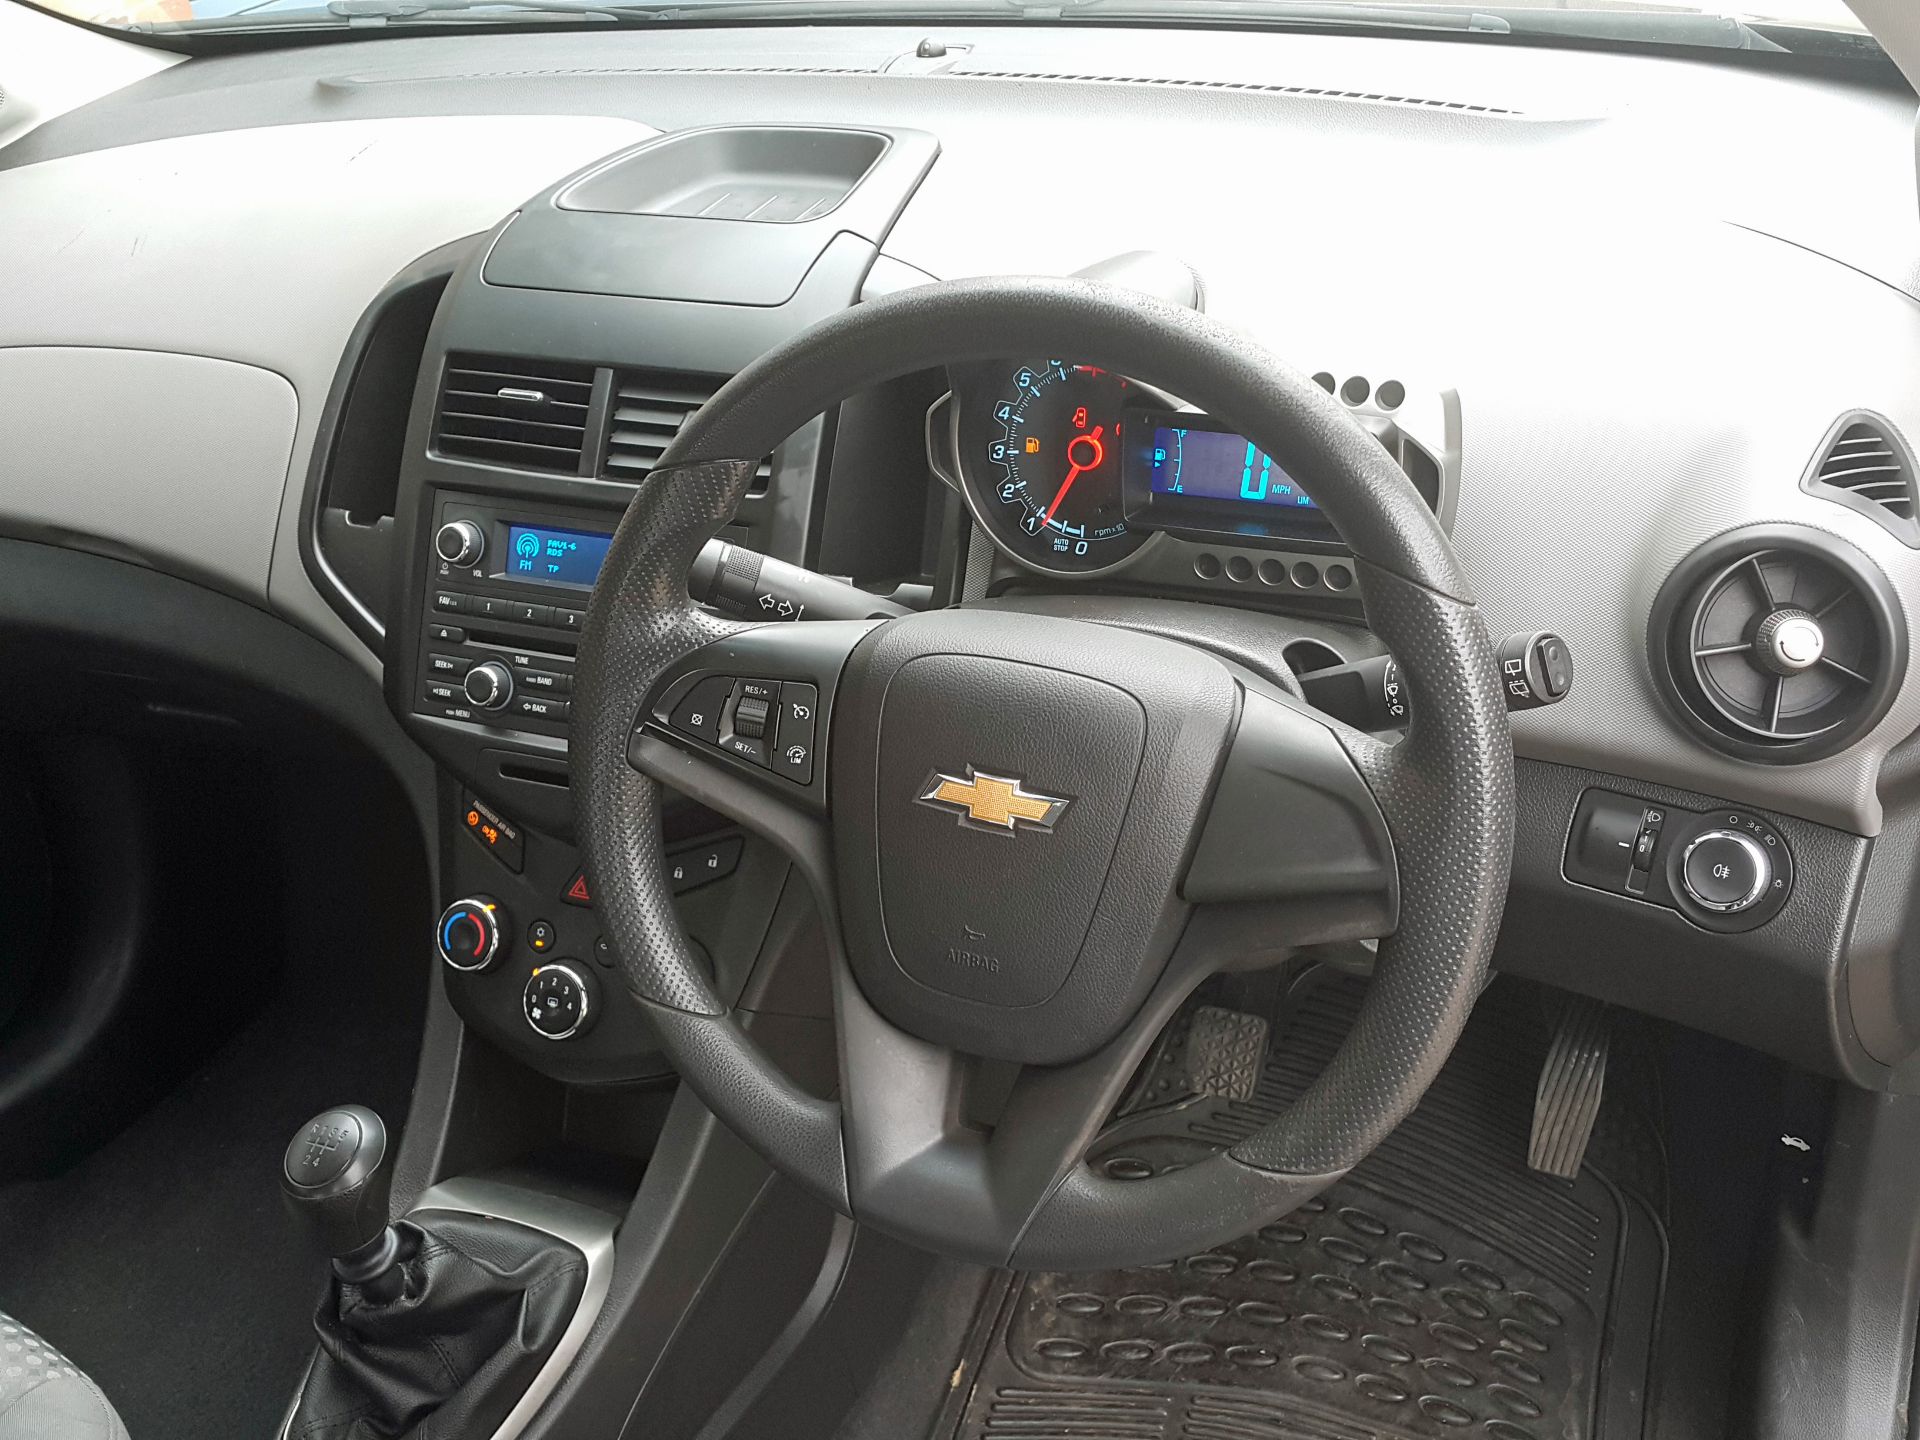 Chevrolet Aveo 1.2LS (S/S) 5 Door 2012 (62 Reg), Only 49000 Miles, Full Service History - Image 10 of 18